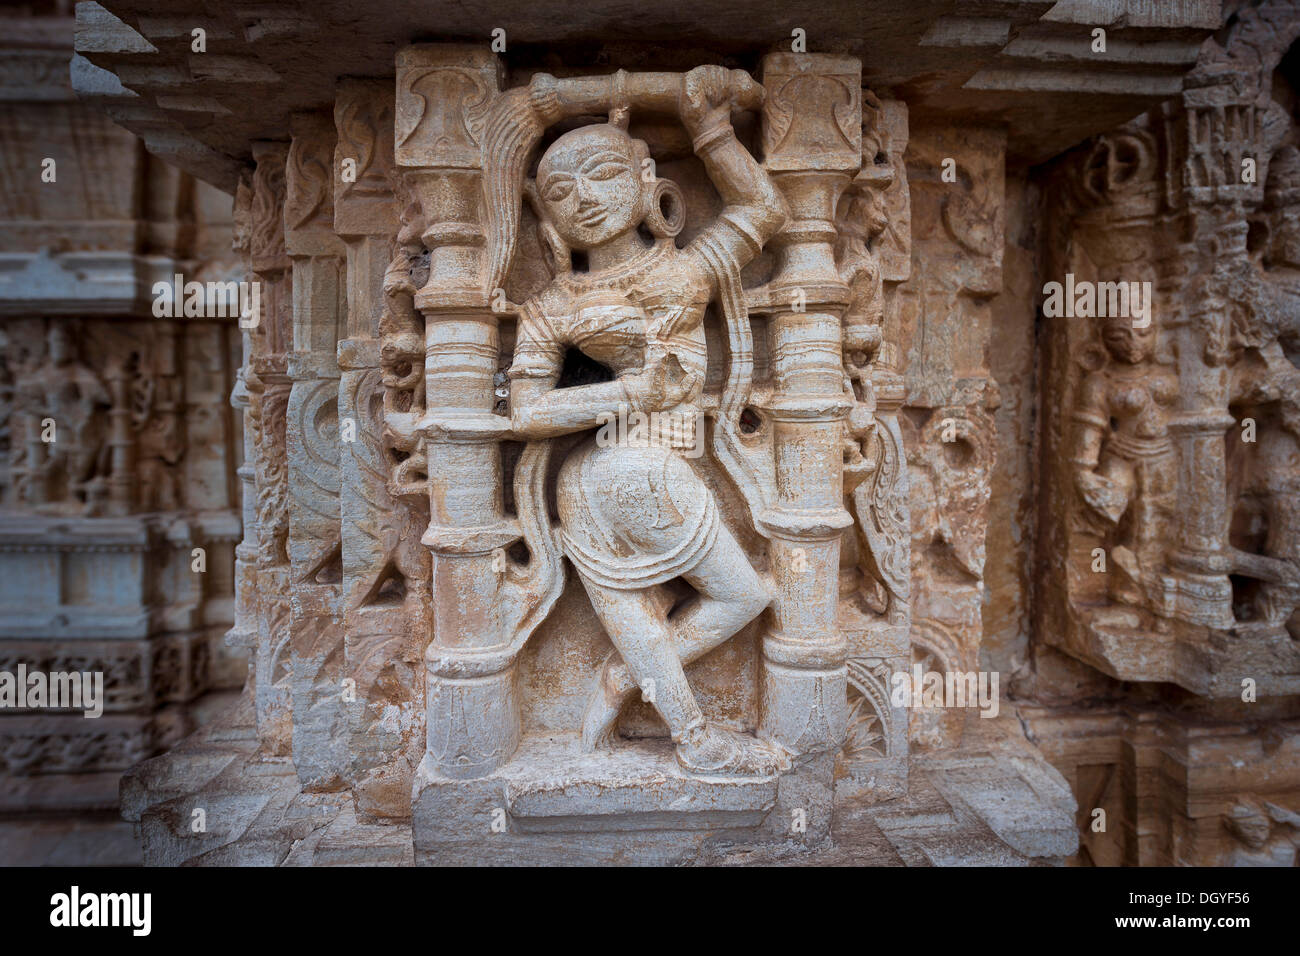 Female stone sculpture, Vijaya Stambha victory tower, Chittorgarh Fort, Chittorgarh, Rajasthan, India Stock Photo